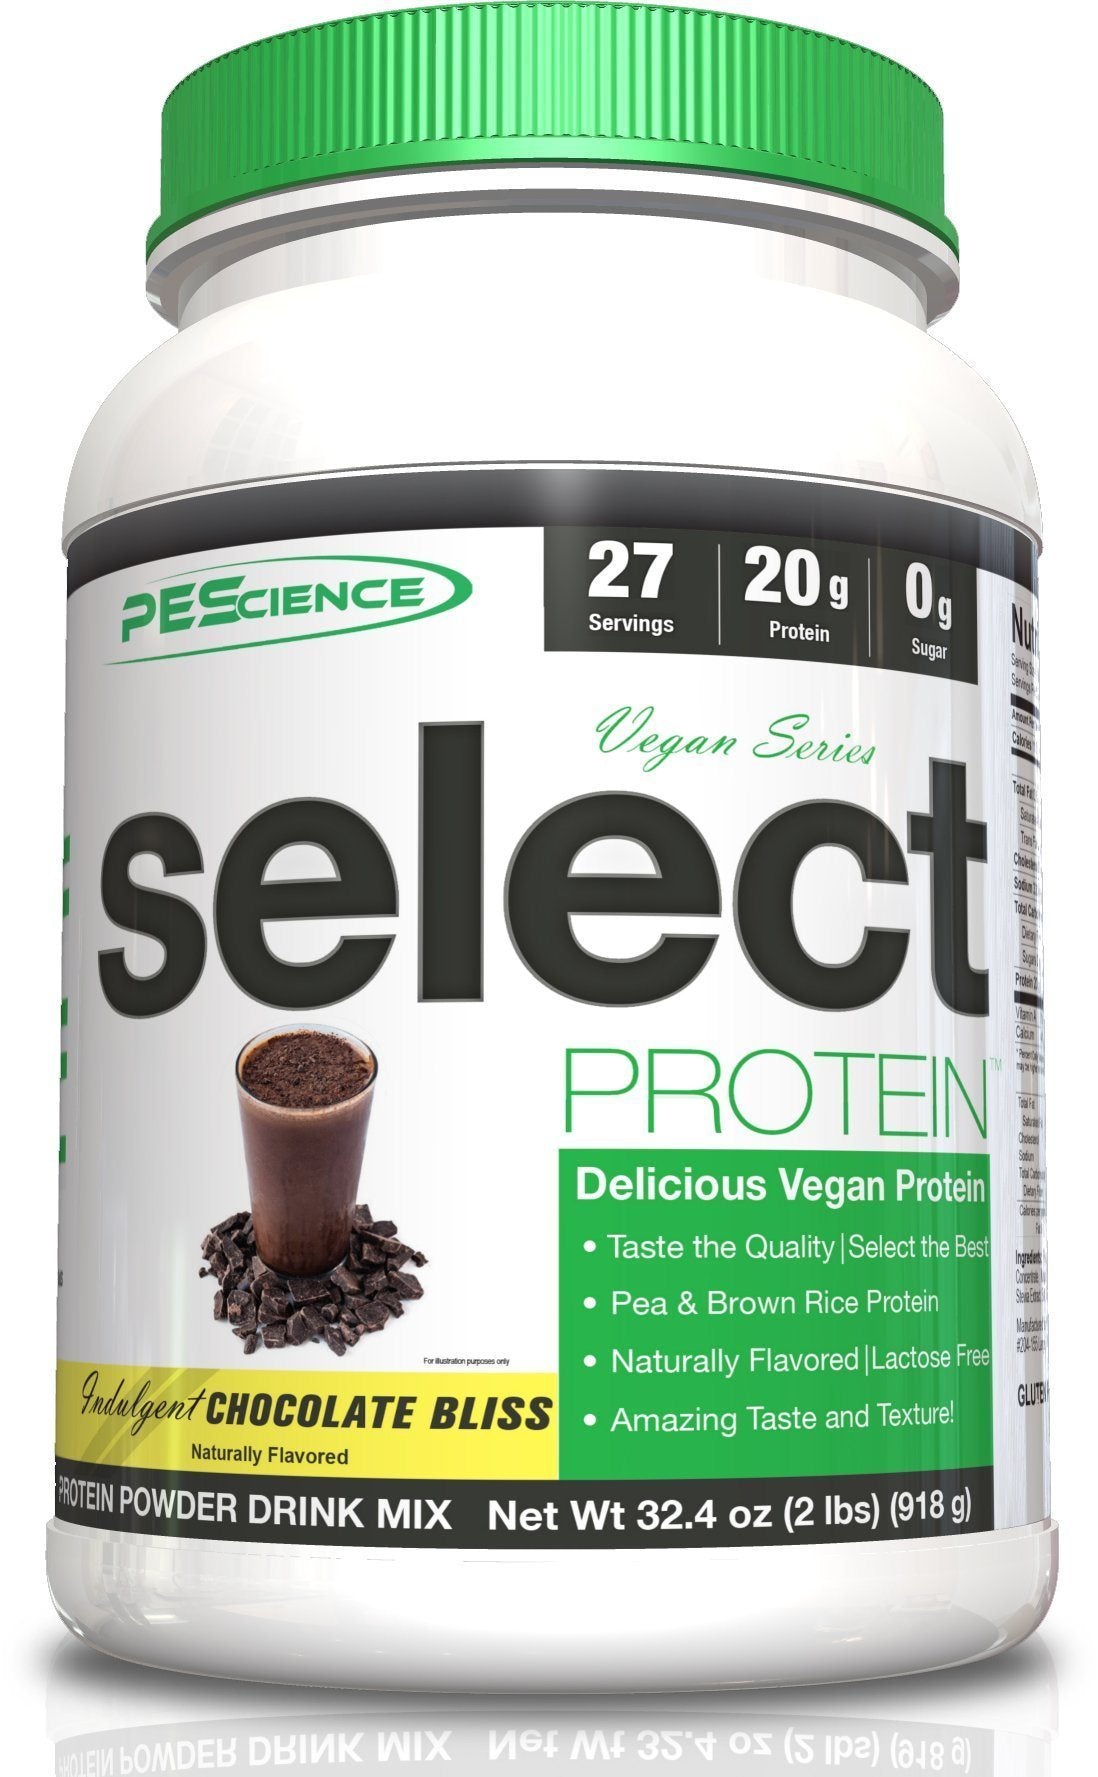 PEScience Vegan Select Protein 27 & 55 Servings